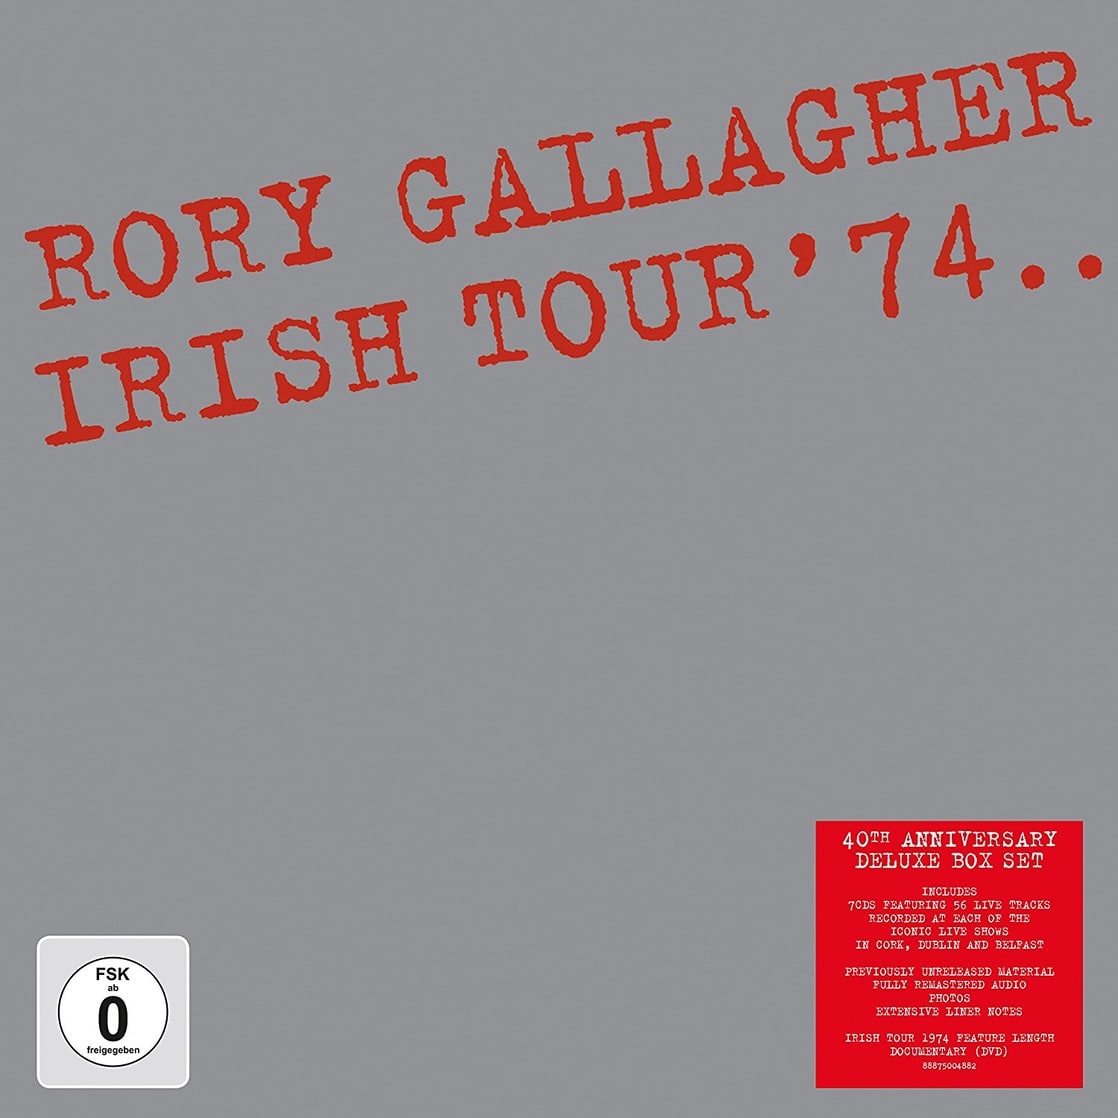 Irish Tour